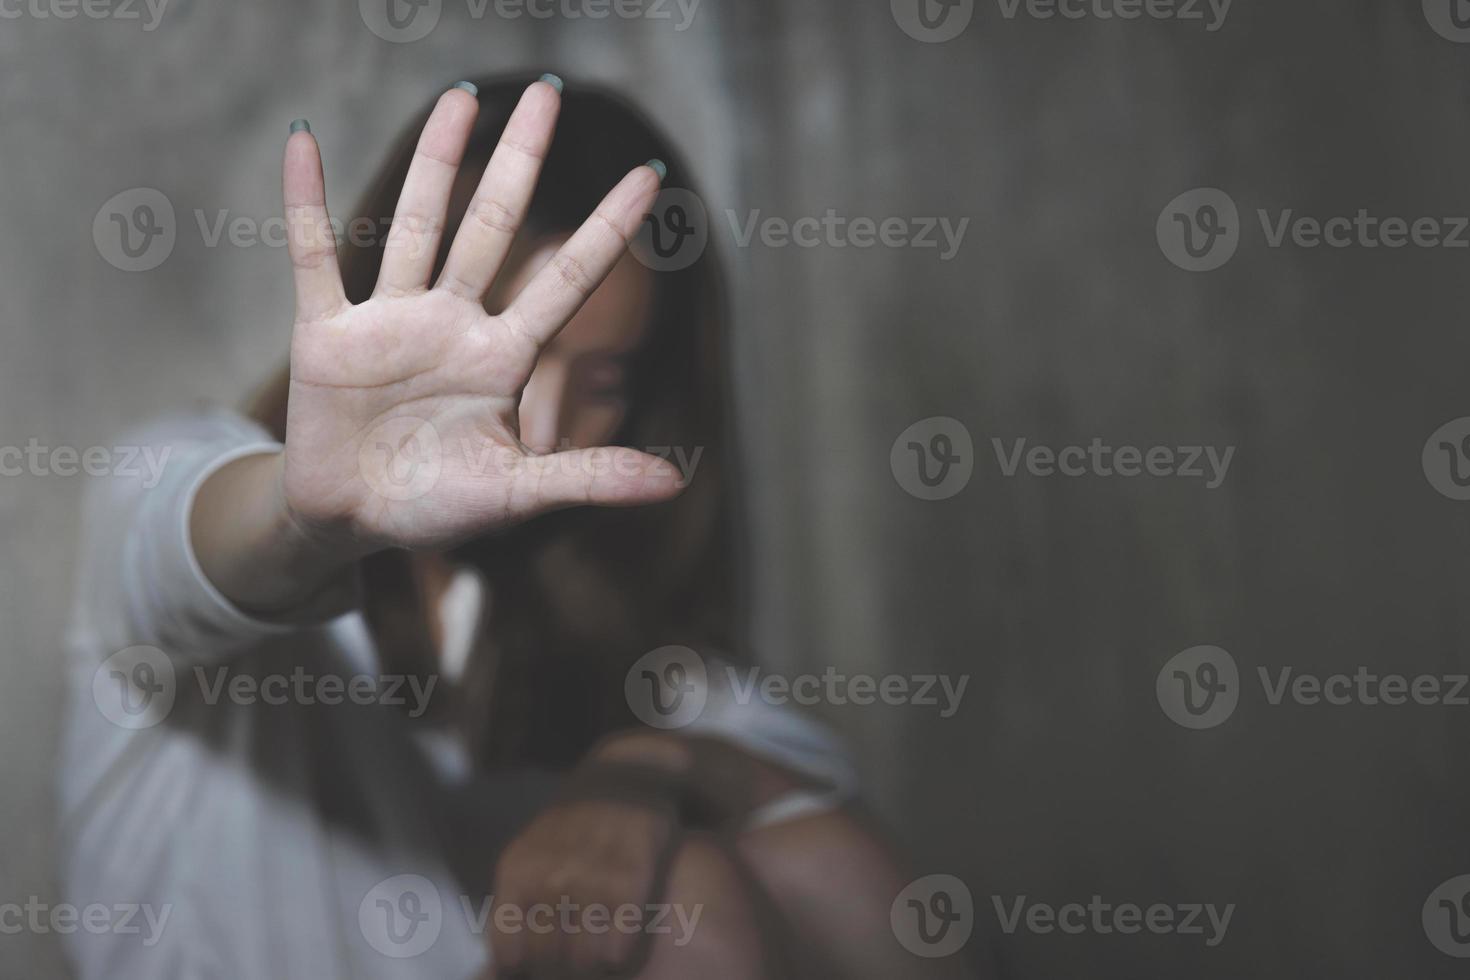 la ragazza alzò la mano per fermarsi. difendendosi con la mano. porre fine alla violenza contro le donne campagna contro lo stupro e la tratta di esseri umani. rivendicare i diritti e le libertà delle donne. foto